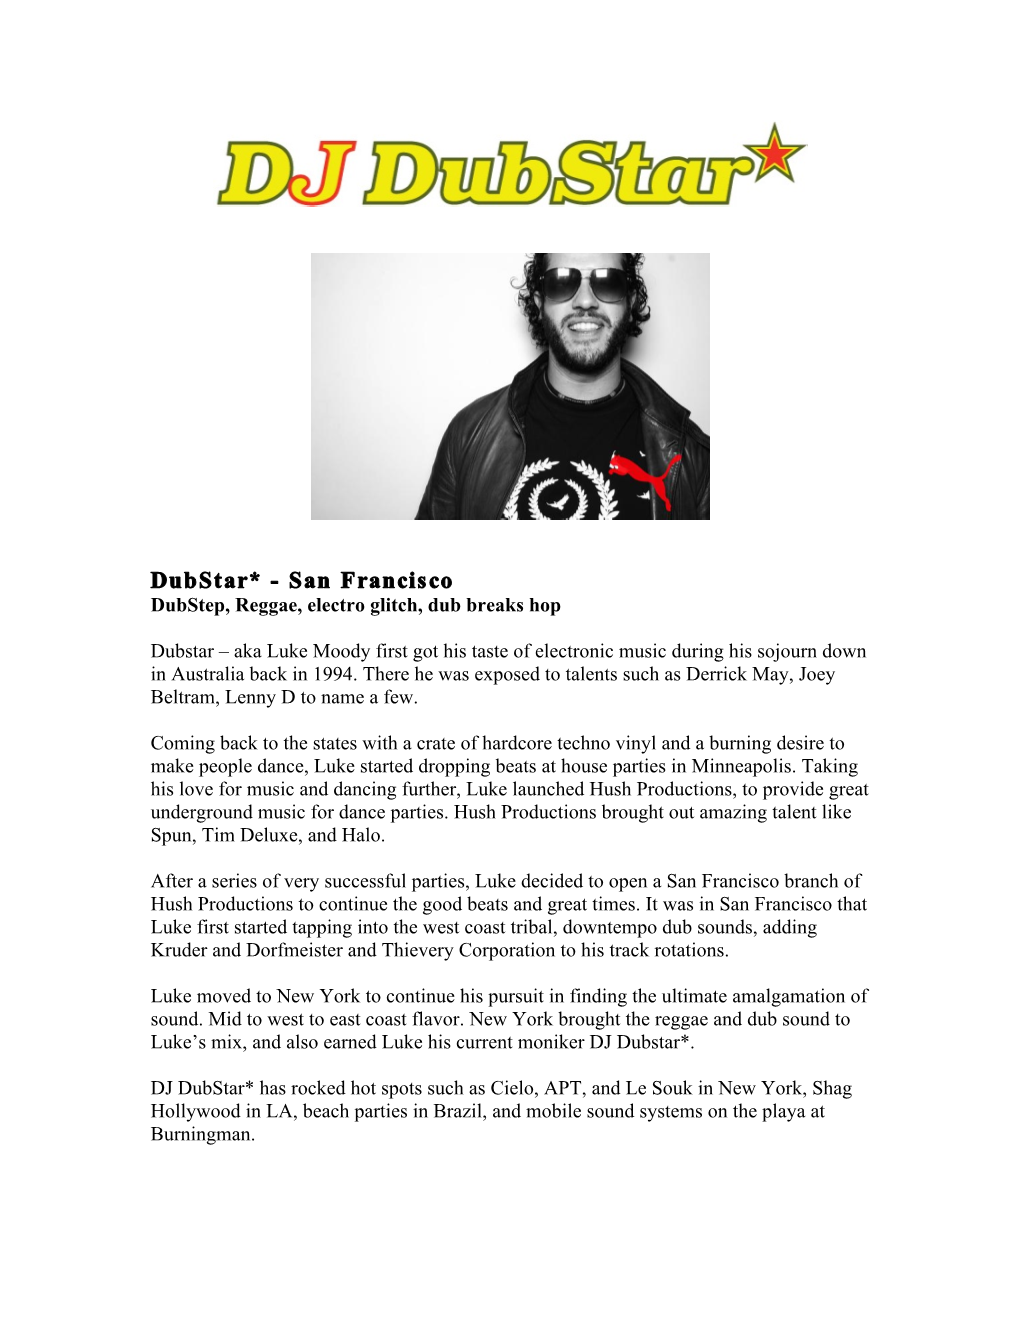 Dubstar* - San Francisco Dubstep, Reggae, Electro Glitch, Dub Breaks Hop